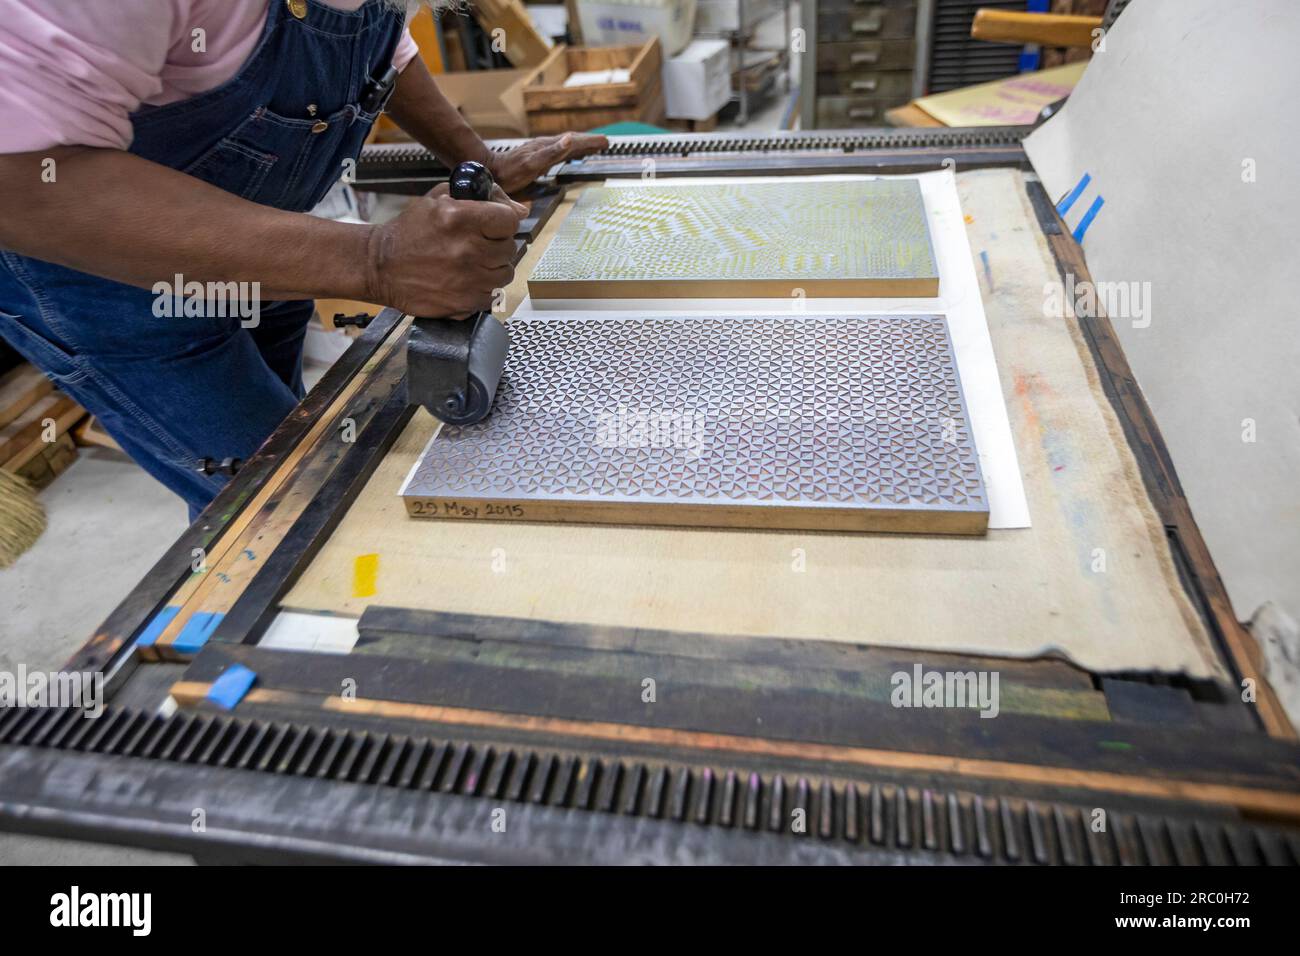 Detroit, Michigan – Amos Kennedy arbeitet in seiner Druckerei. Kennedy druckt Poster und veranstaltet Workshops zum Hochdruck. Stockfoto